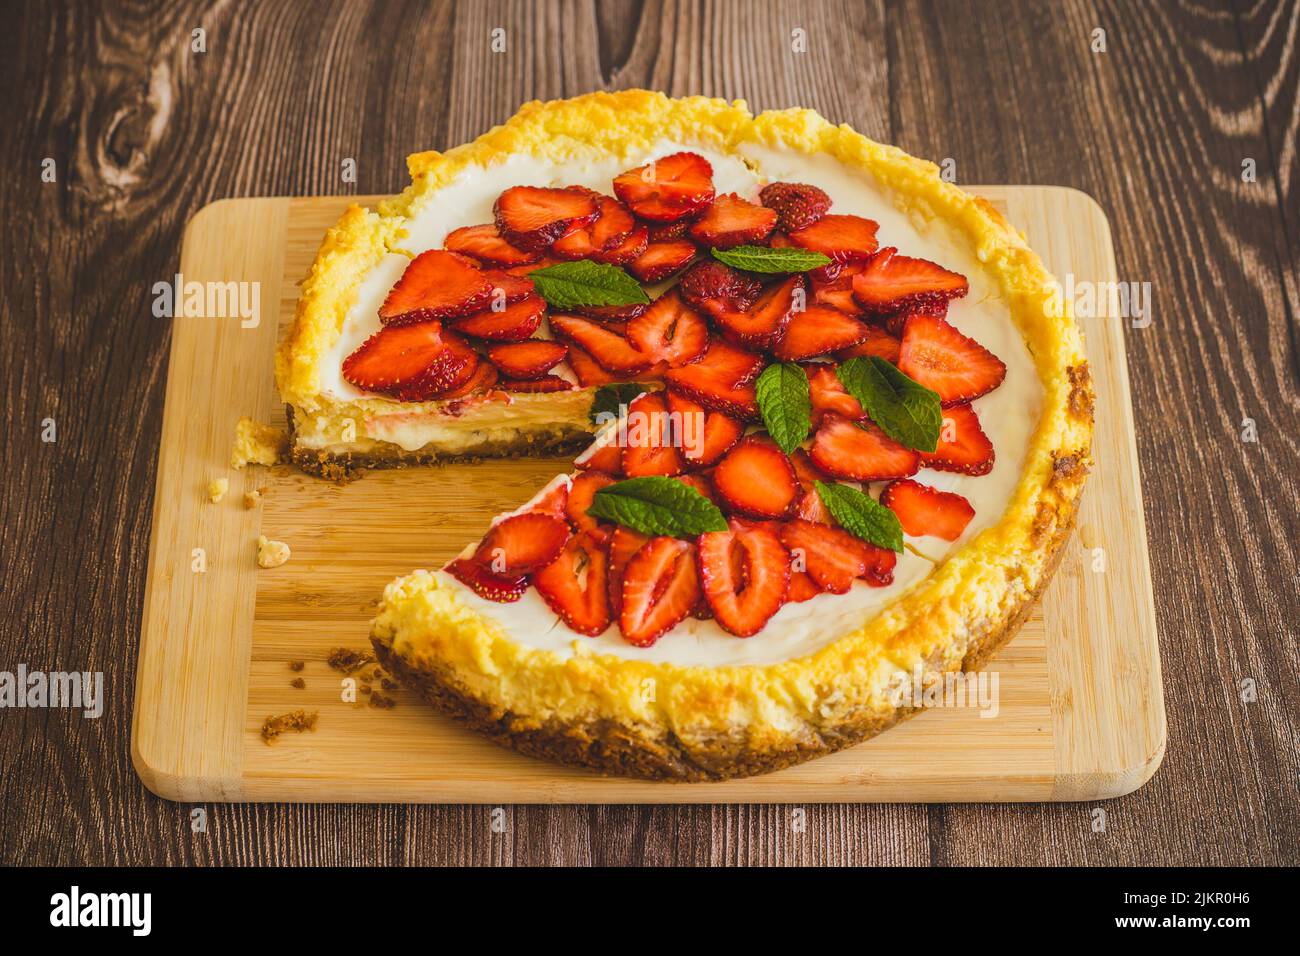 Stück Erdbeer hausgemachten Kuchen auf Holztisch.köstliche Käsekuchen mit Erdbeeren mit Minzblättern verziert.Draufsicht.gesunde Bio-Sommer werden Stockfoto